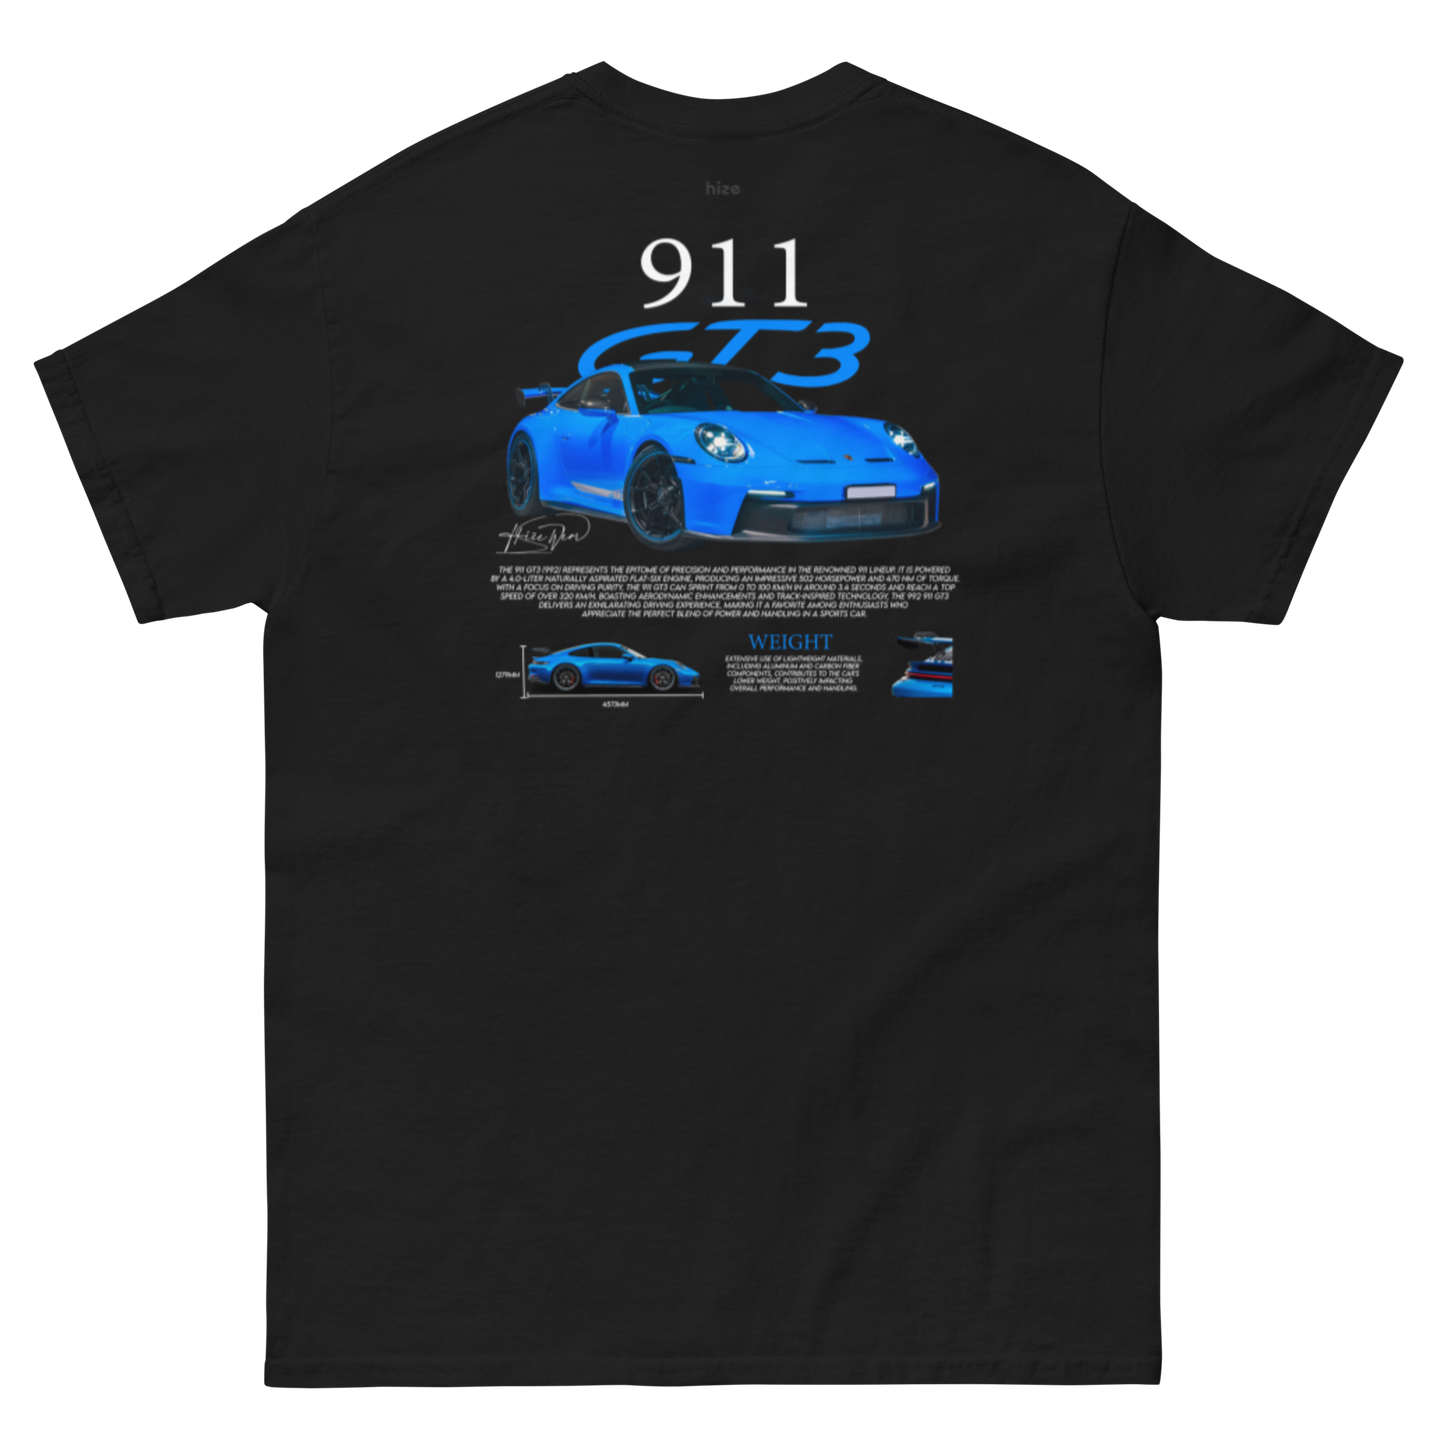 Porsche 911 GT3 992 T-shirt - Black Back View